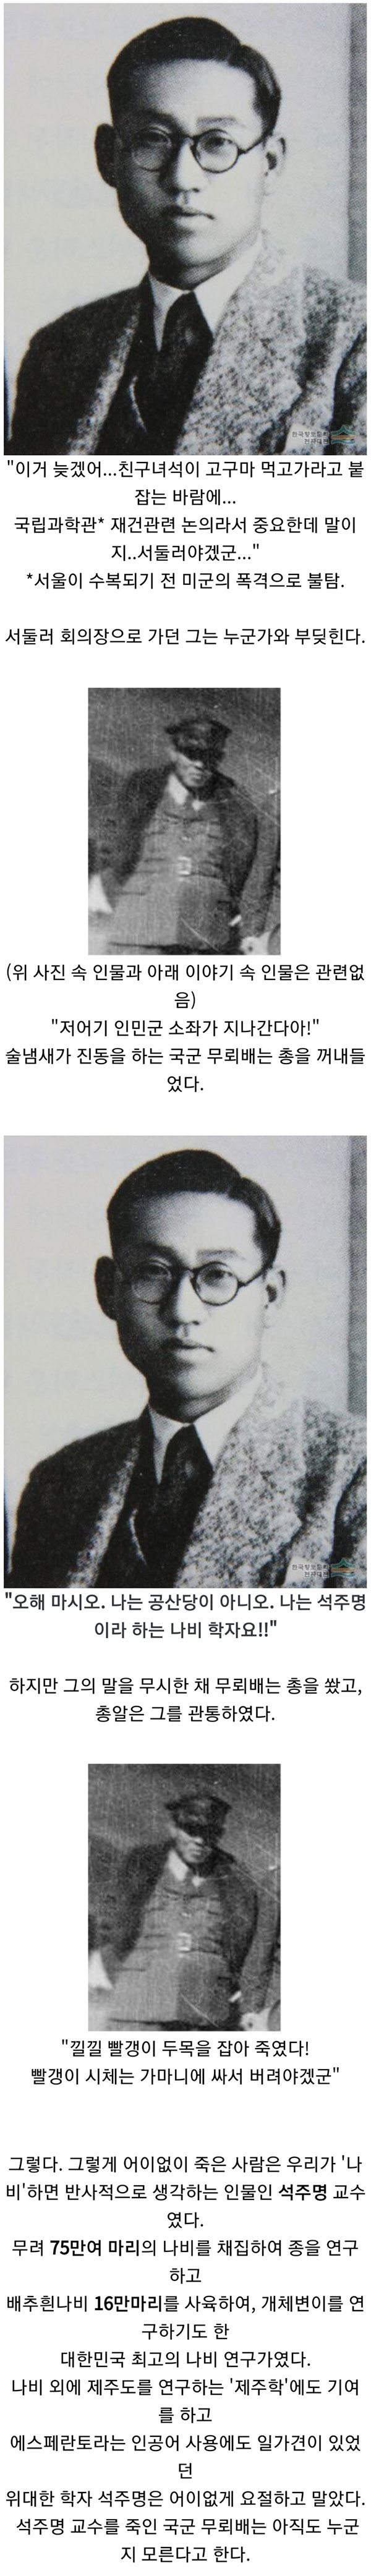 한국 역사상 가장 황당하게 죽은 과학자